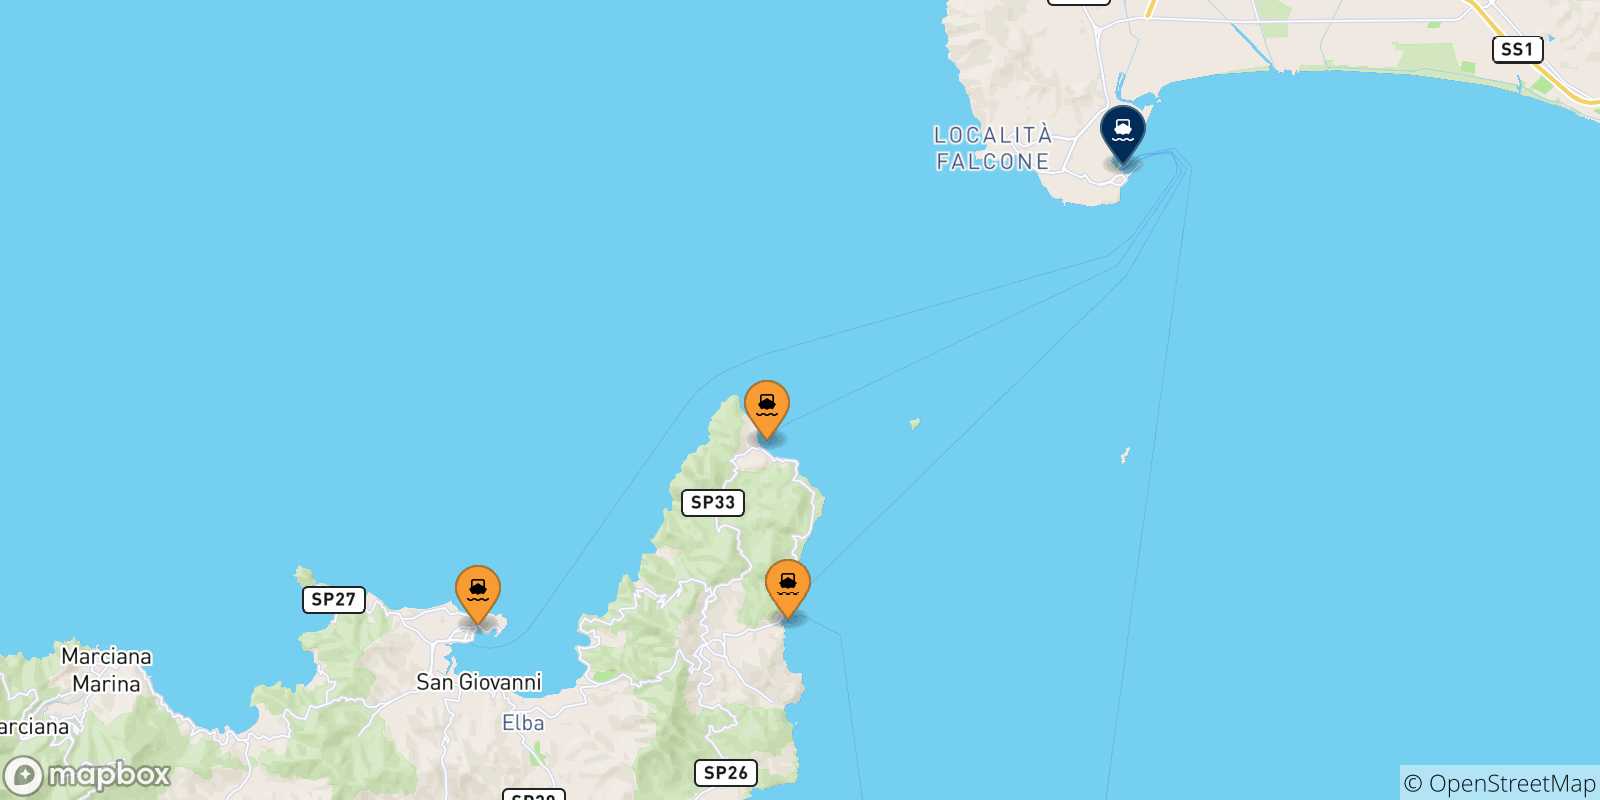 Mappa delle possibili rotte tra l'Isola D'elba e Piombino